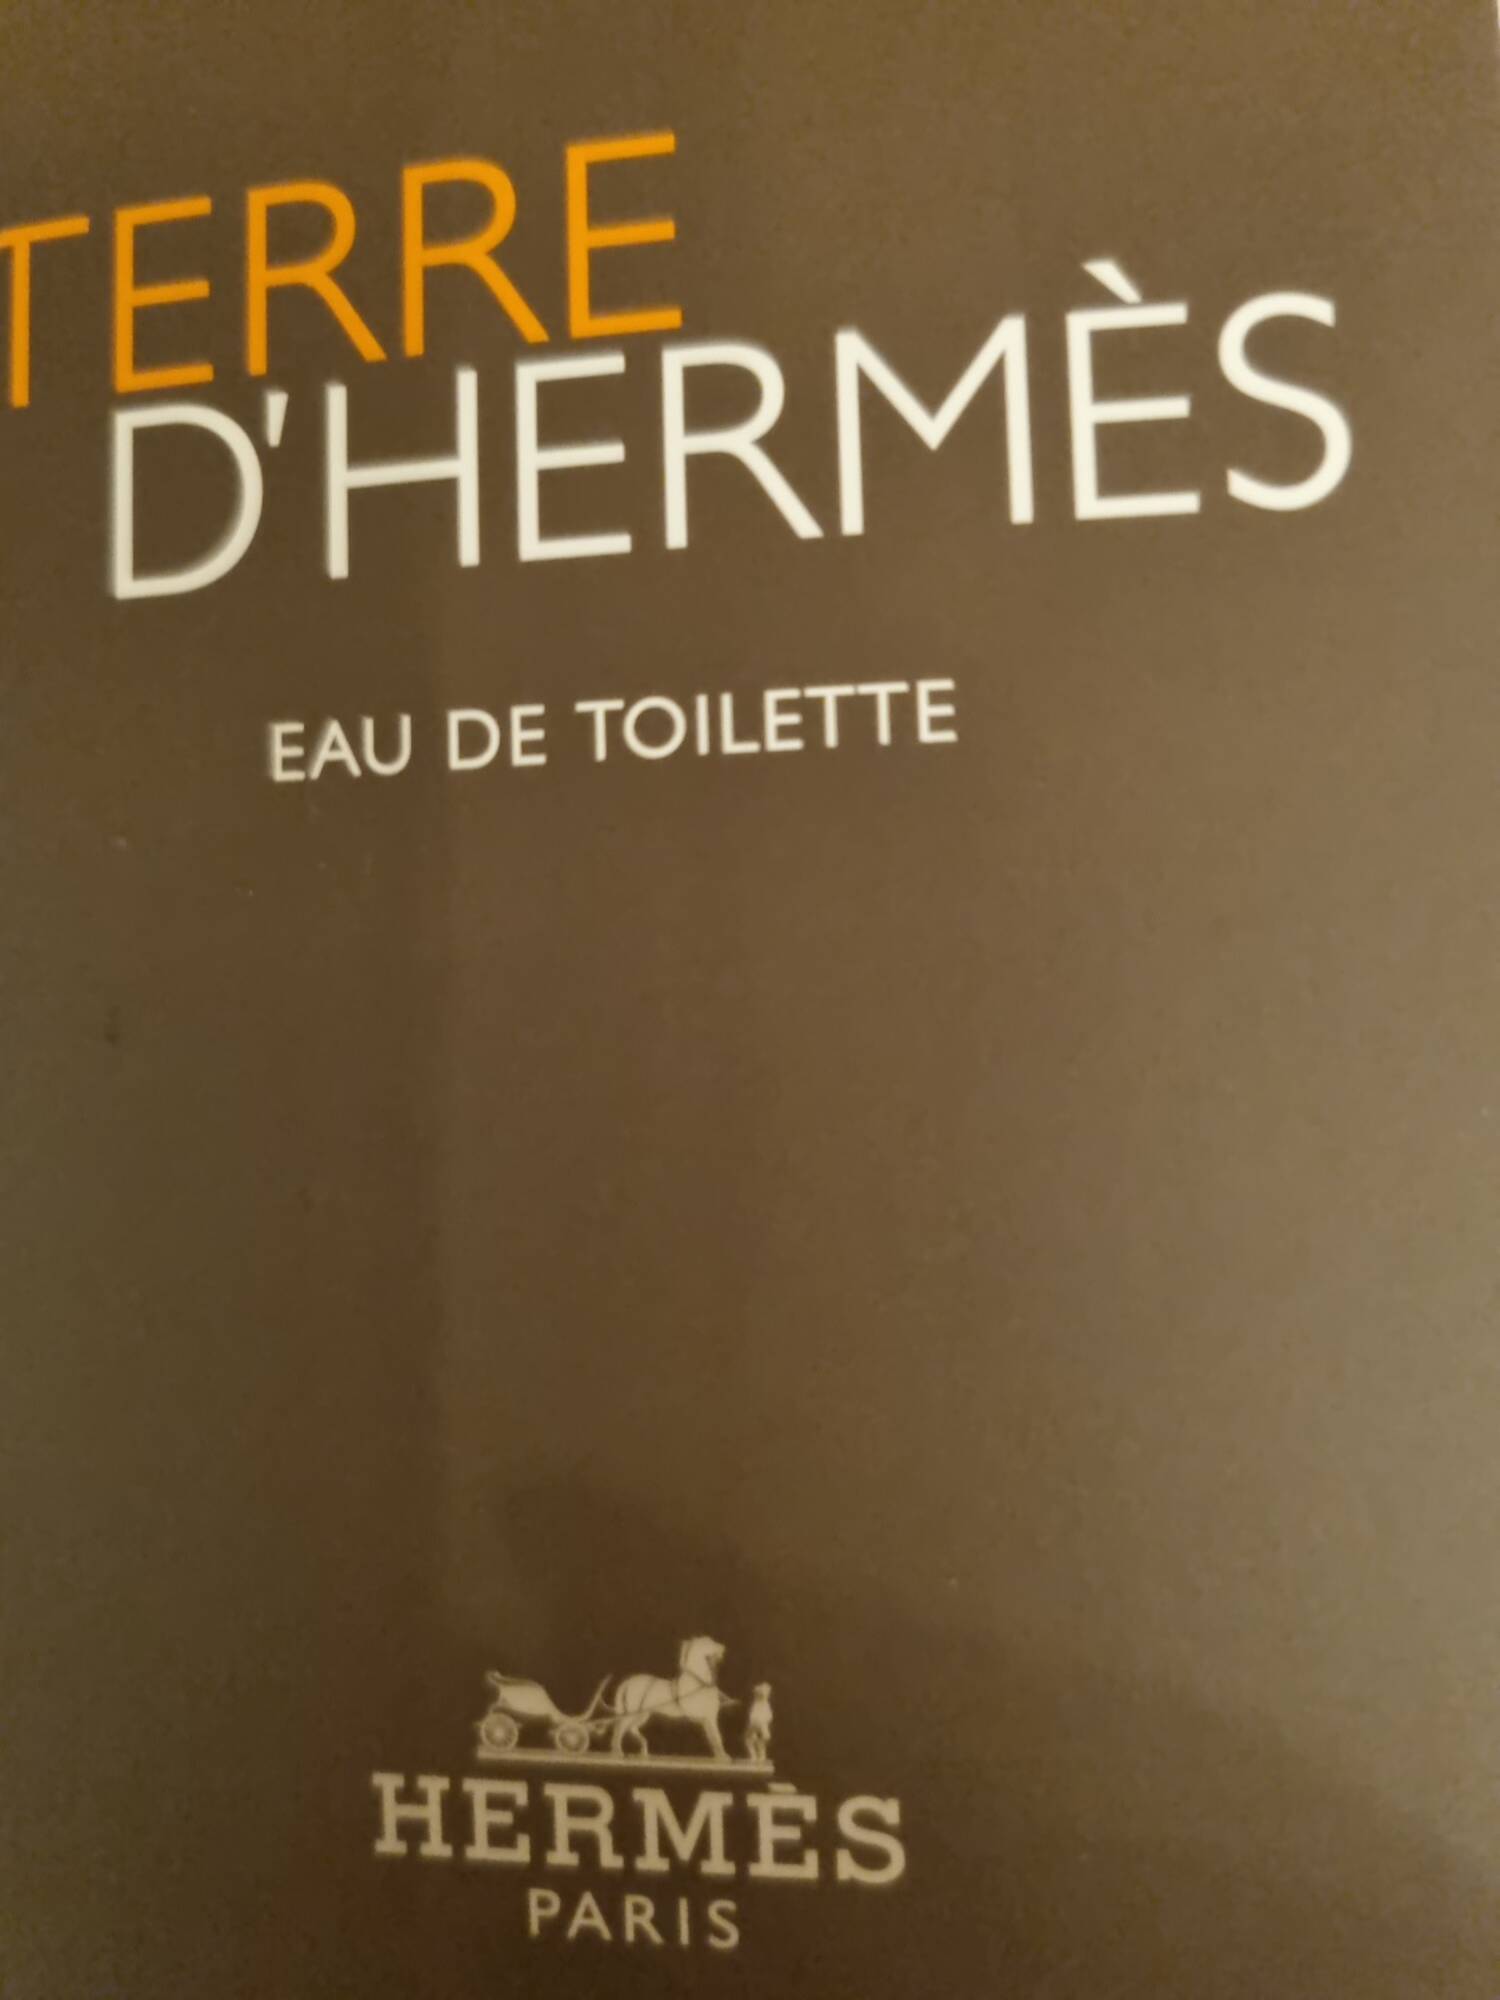 HERMÈS PARIS - Terre d'Hermès - Eau de toilette